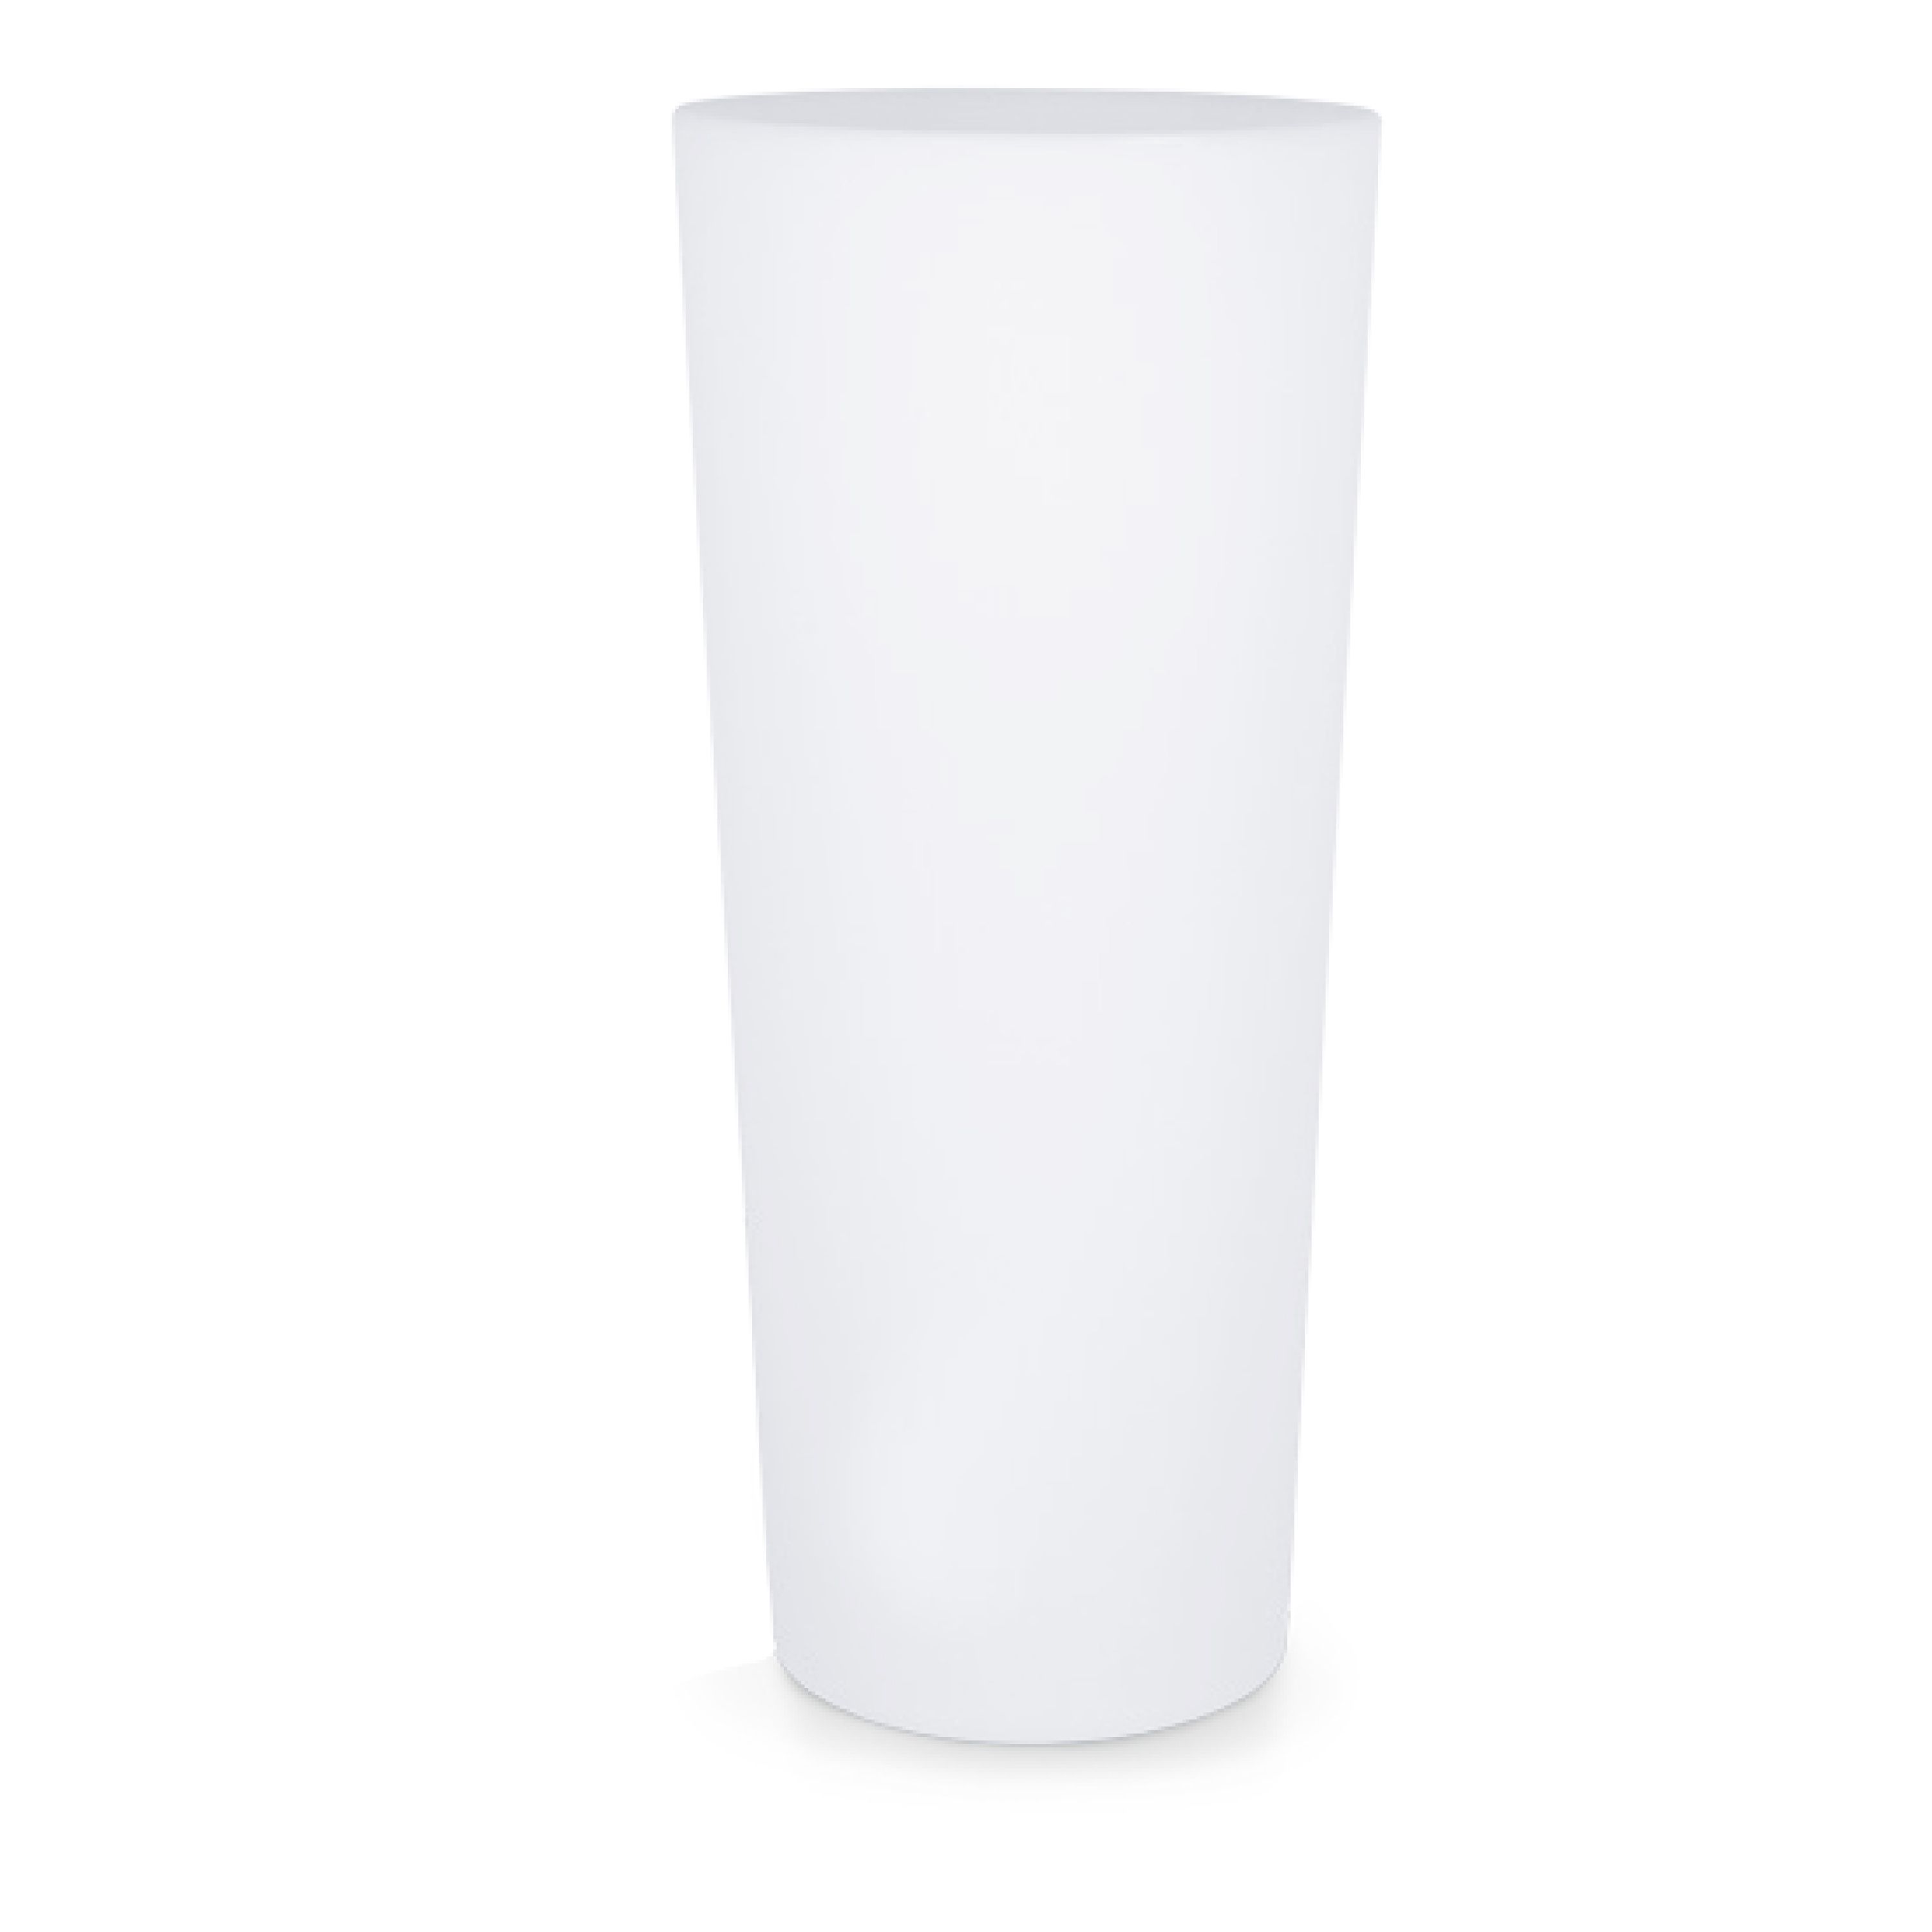 Polyethylene lumineux vase sined rotondo solar 102